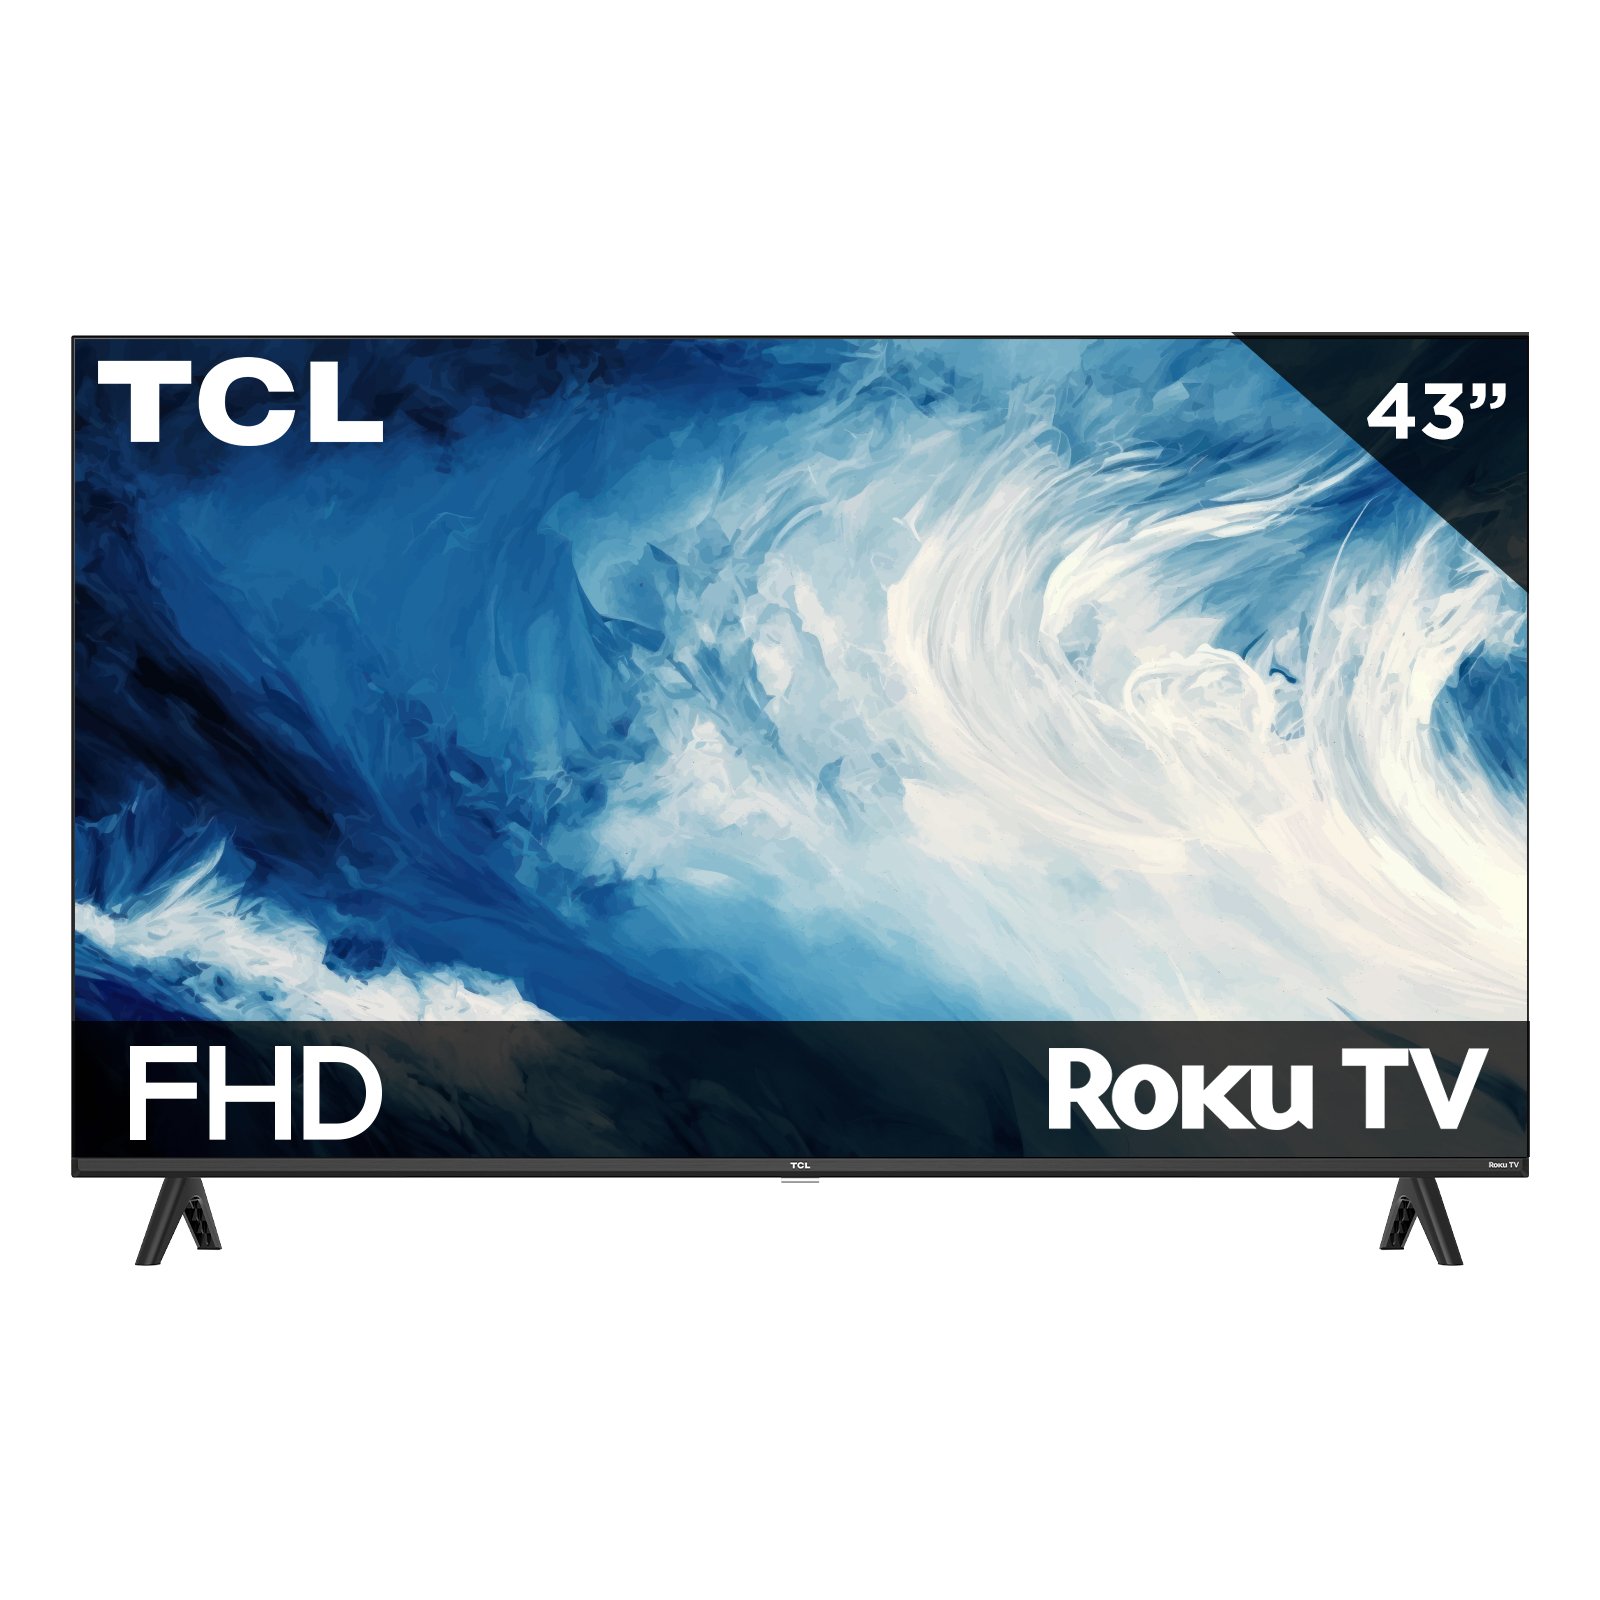 Pantalla TCL 43 FHD 2K Roku TV 43S310R Smart TV